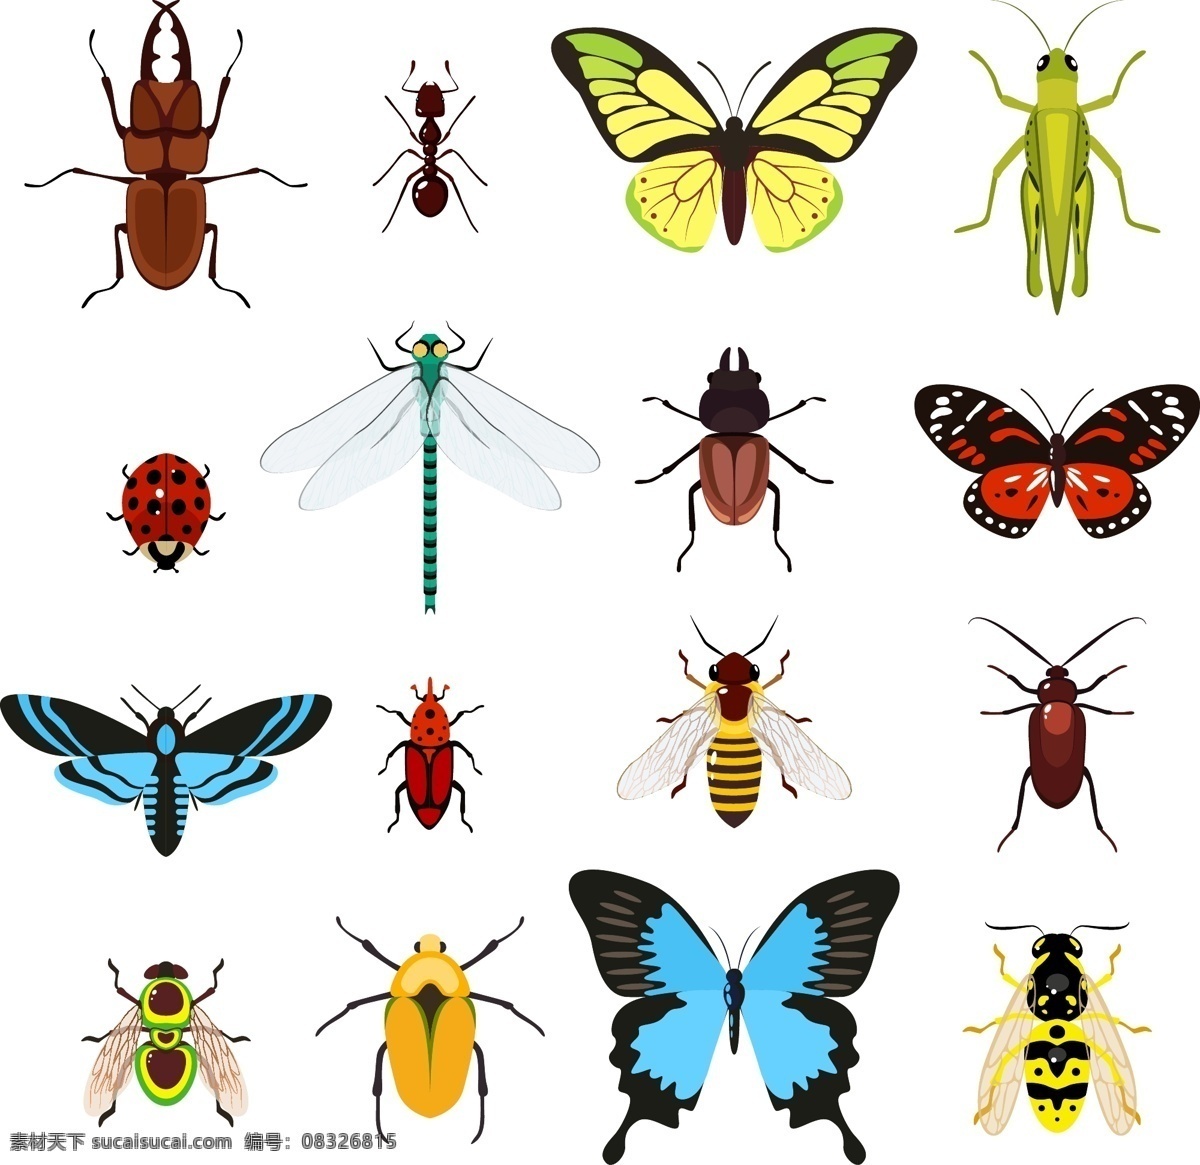 组 各种各样 小 昆虫 元素 设计素材 创意设计 动物 小动物 卡通 可爱 虫子 蝴蝶 蜜蜂